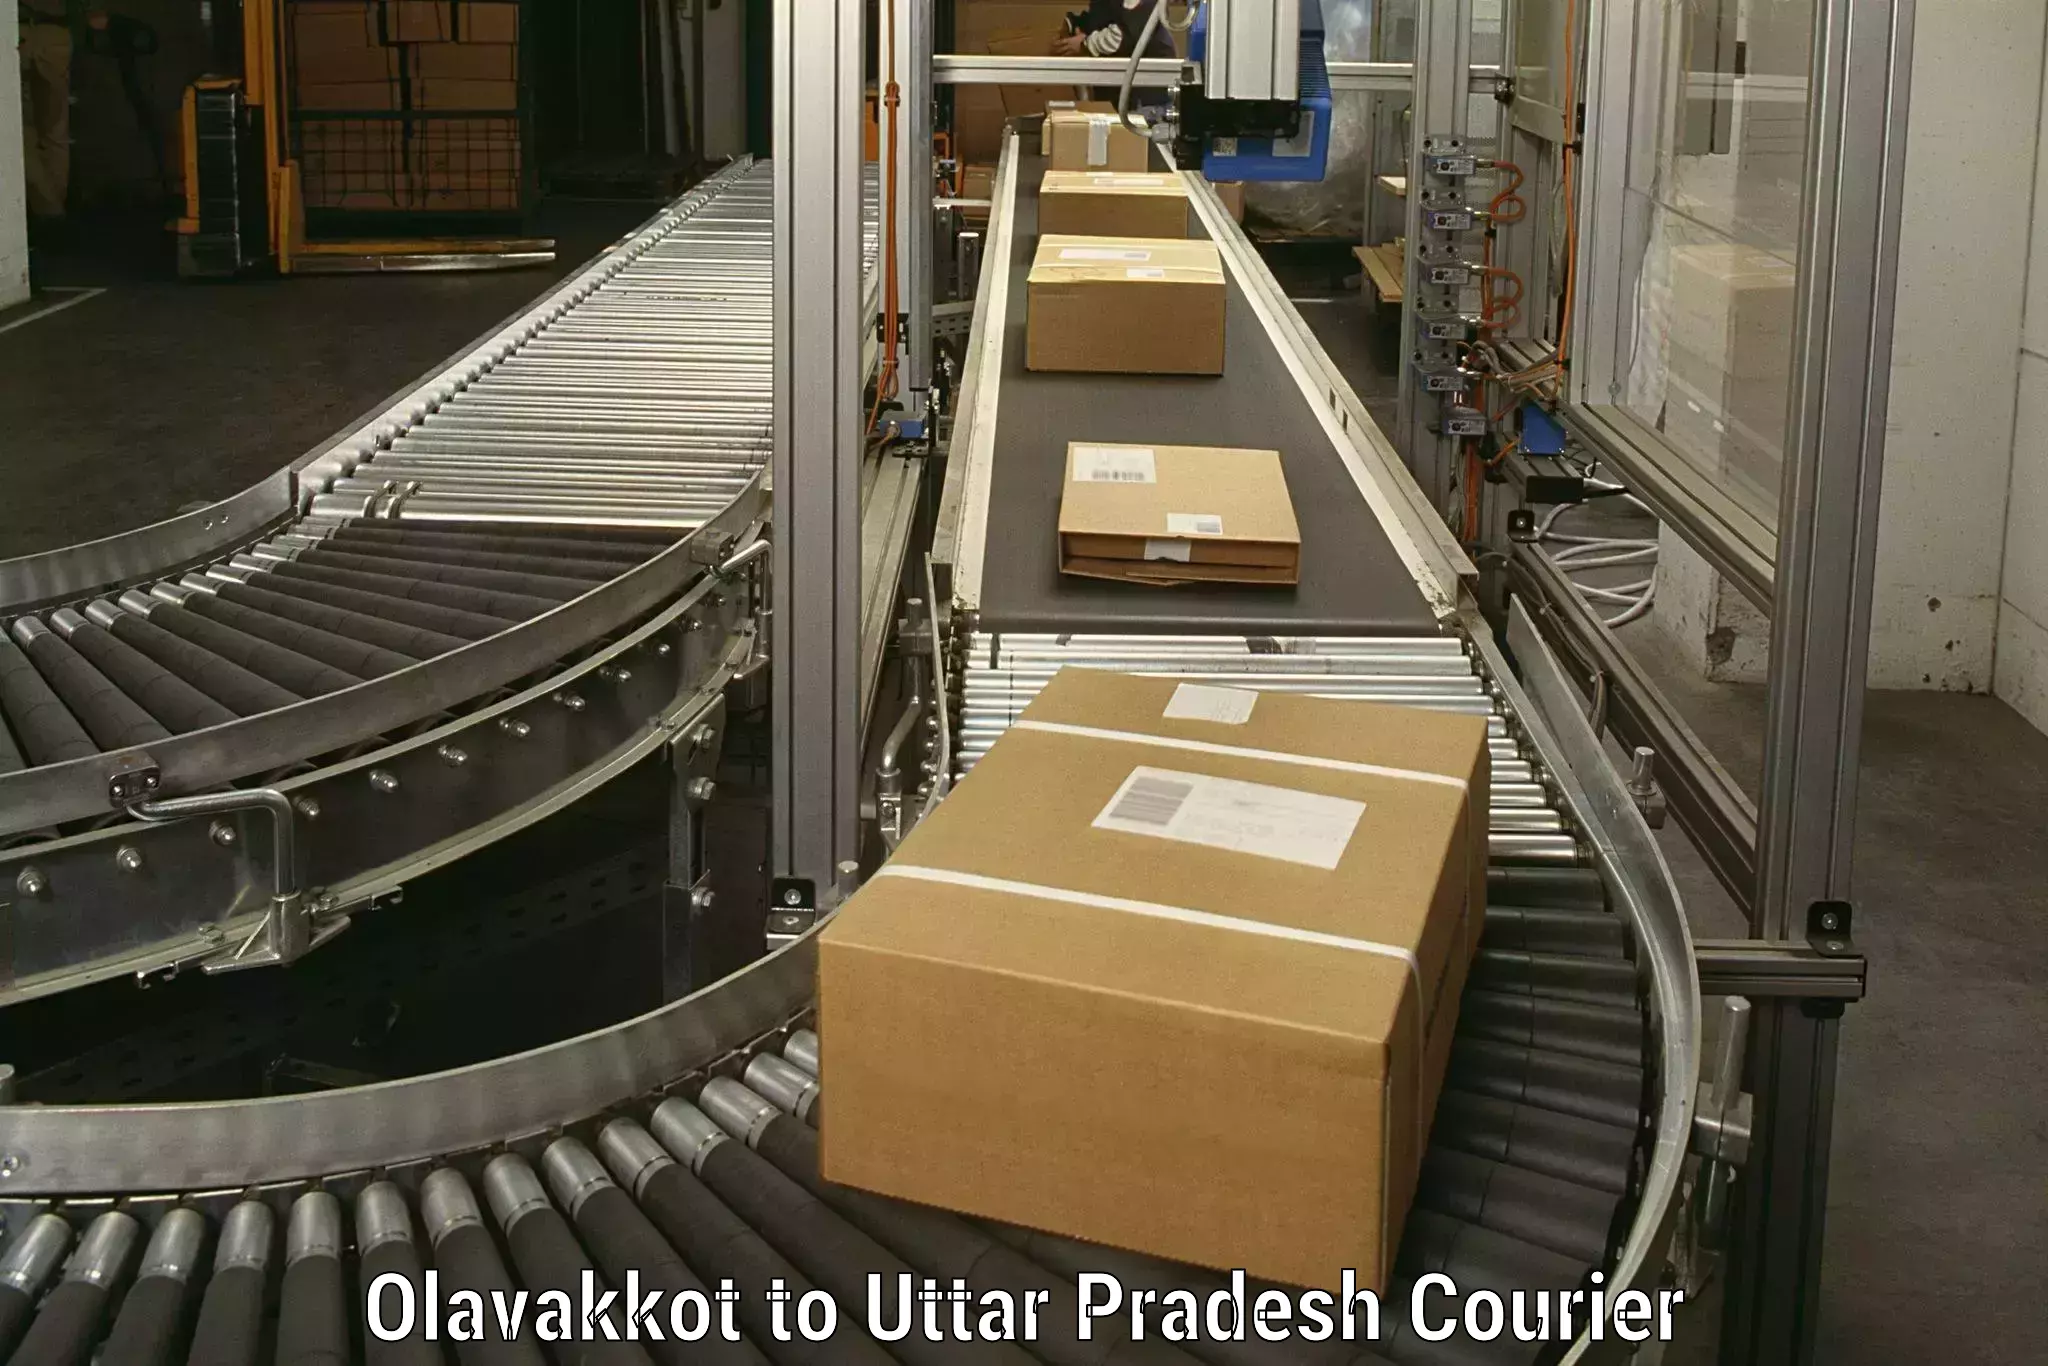 Skilled movers Olavakkot to Varanasi